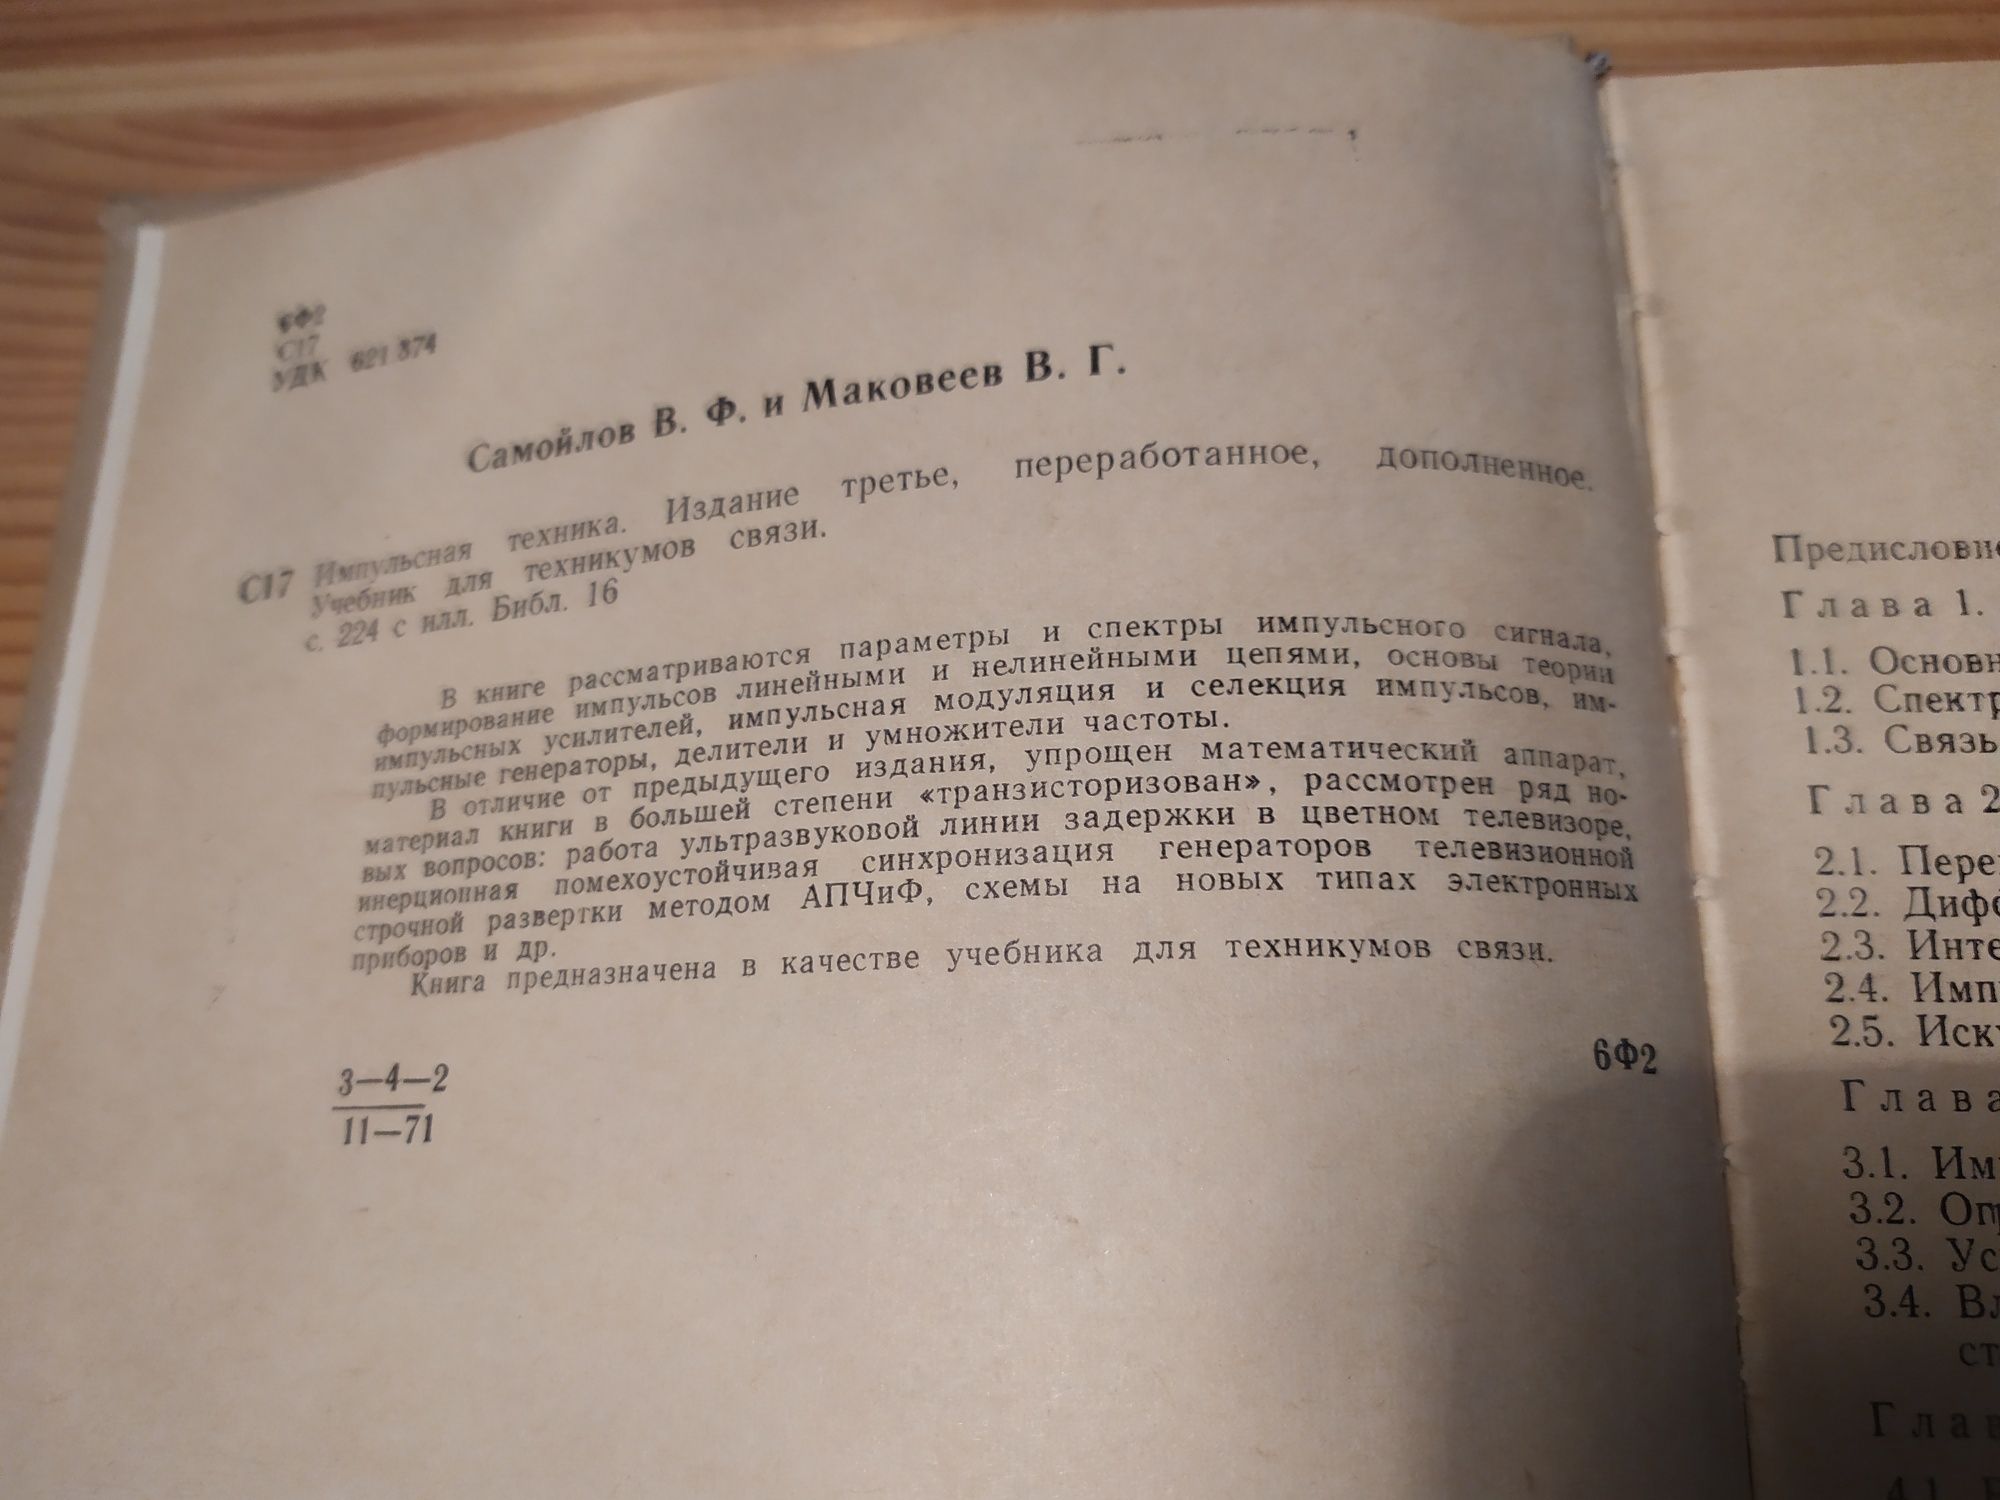 Импульсная техника Самойлов, Маковеев 1971 г .